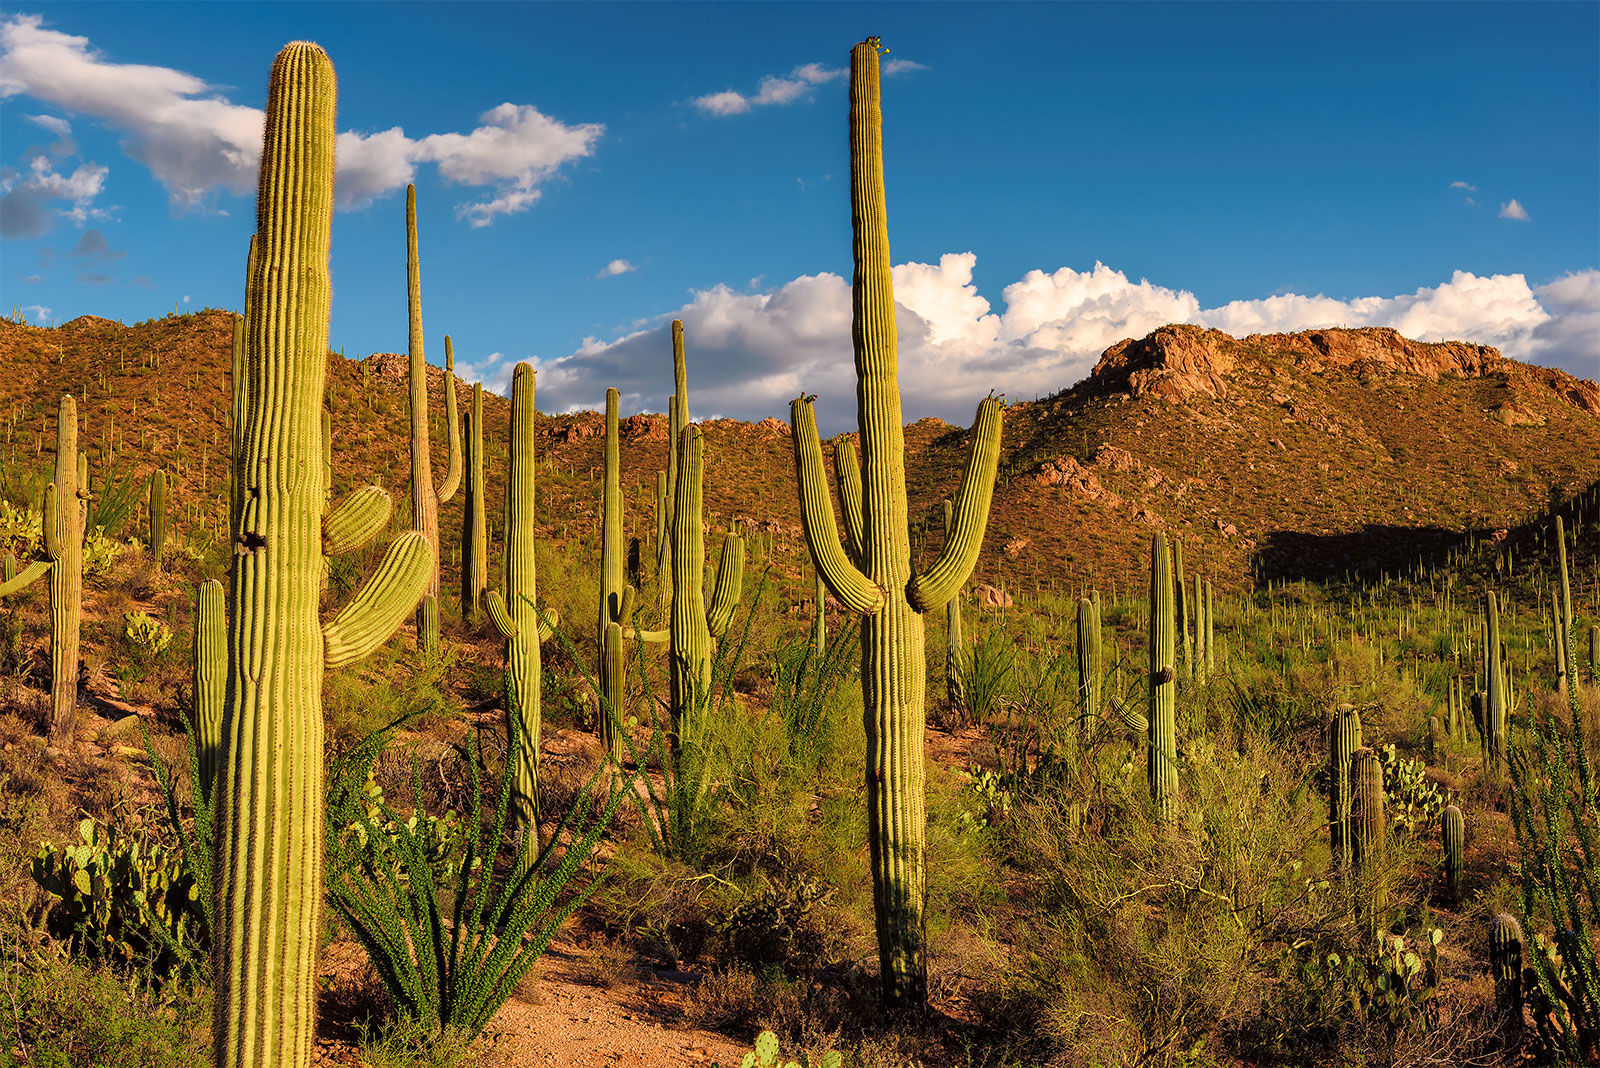 A felmelegedés miatt a kaktuszok is eltűnhetnek